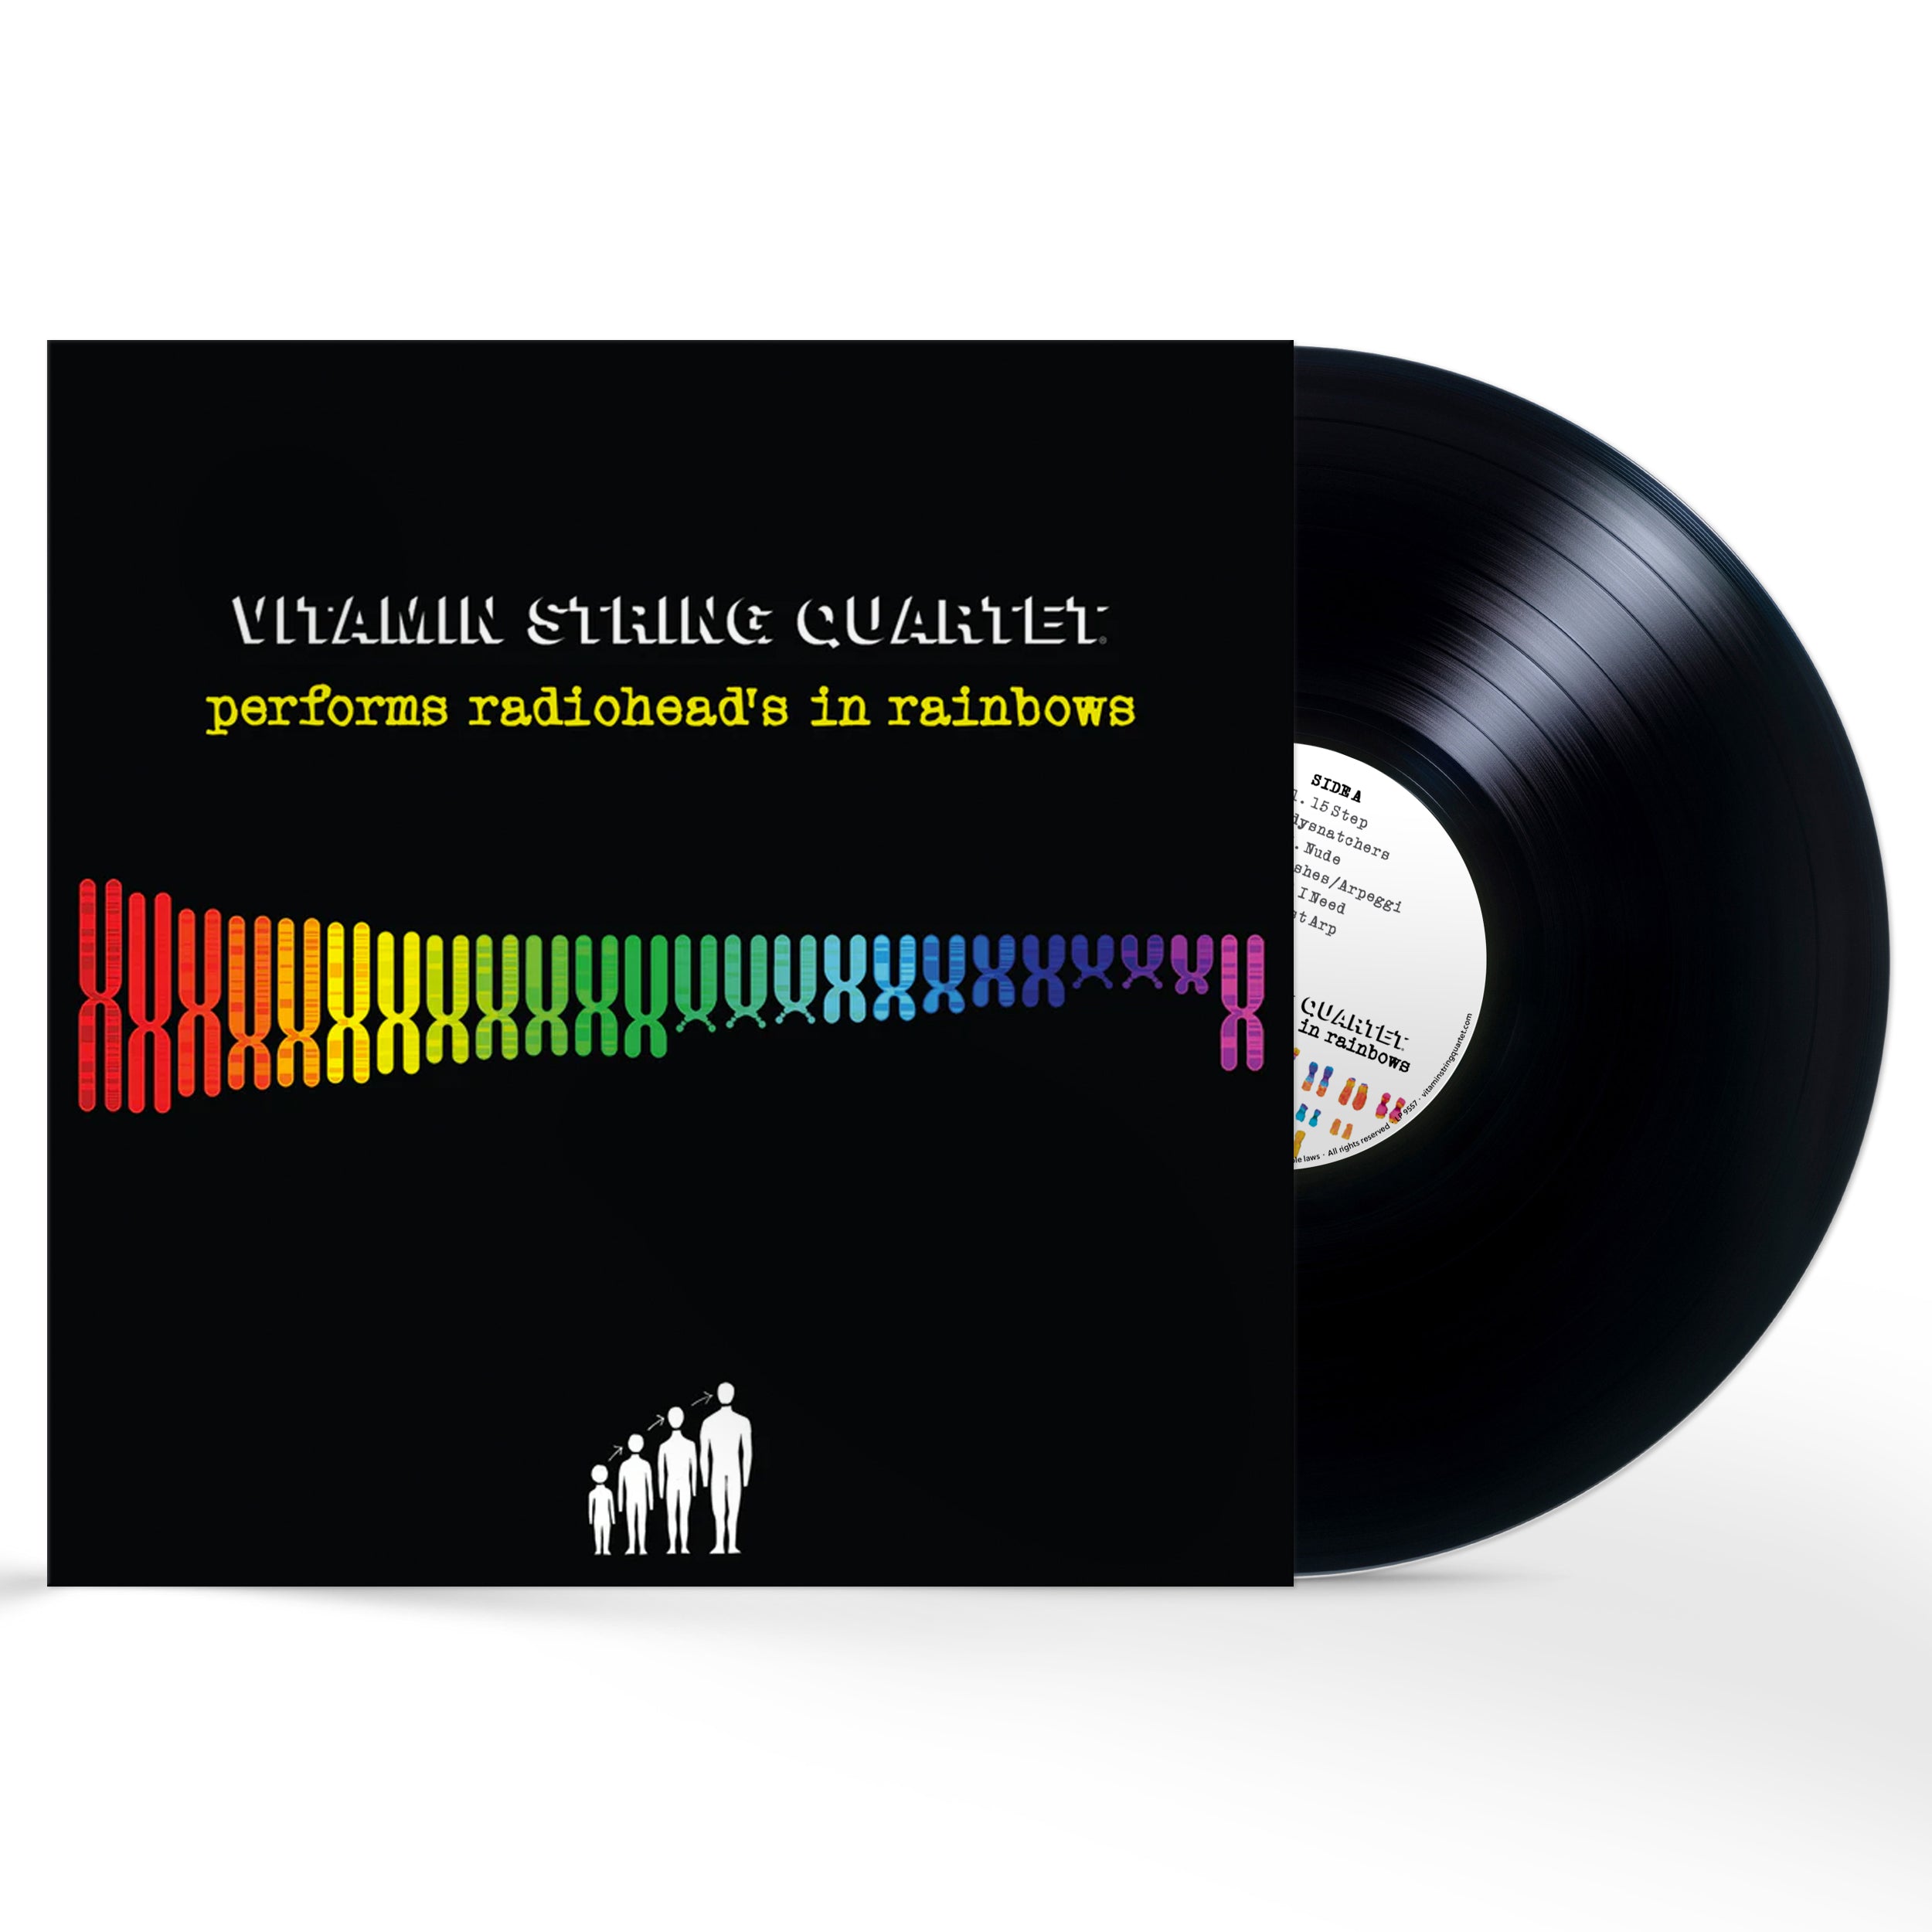 Rainbow Album Art for Vitamin String Quartet's Radiohead Classical Covers